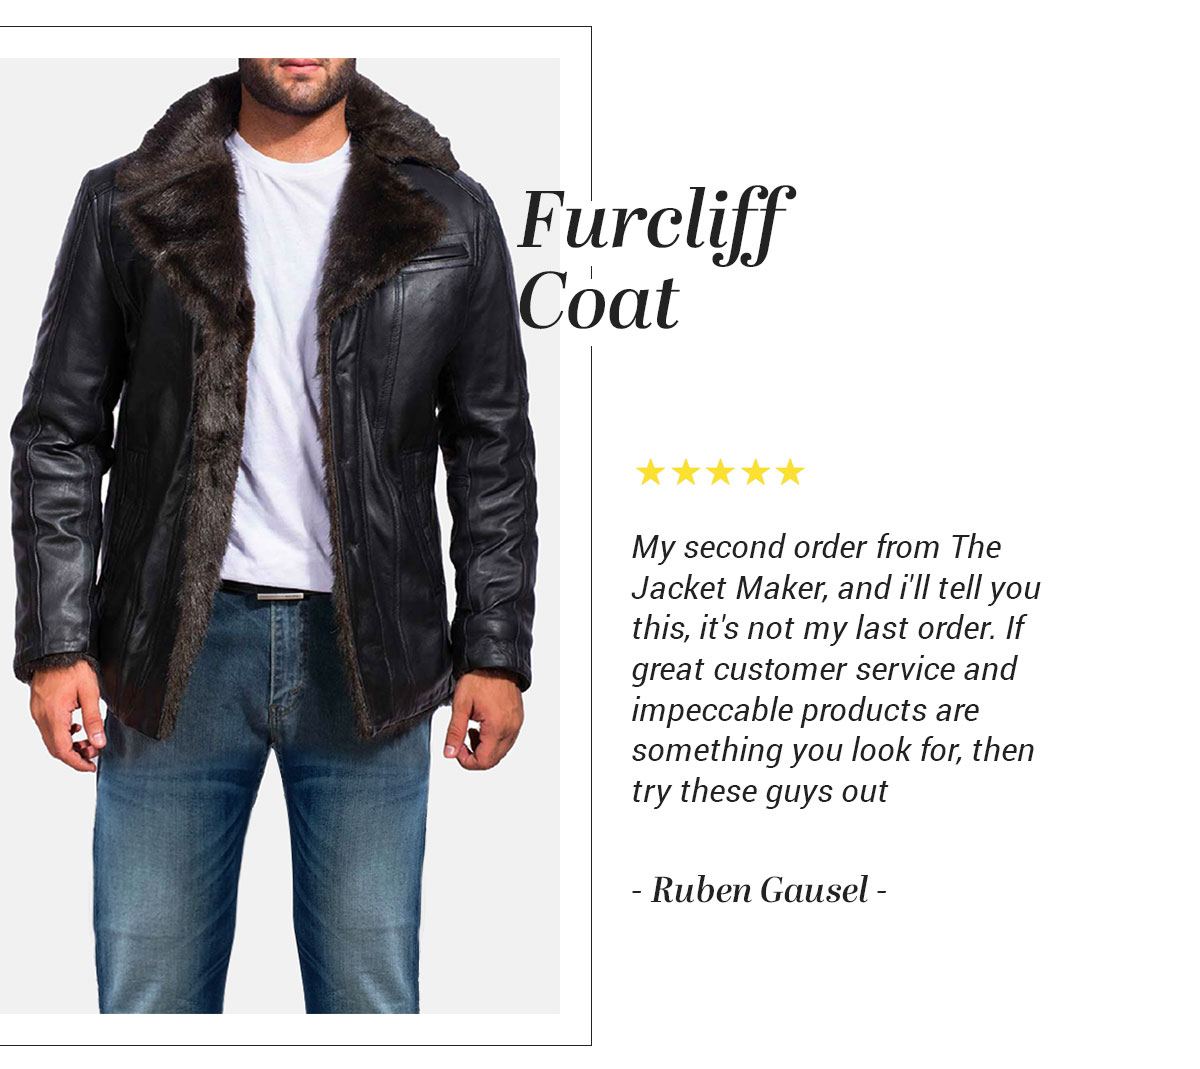 Furcliff Coat